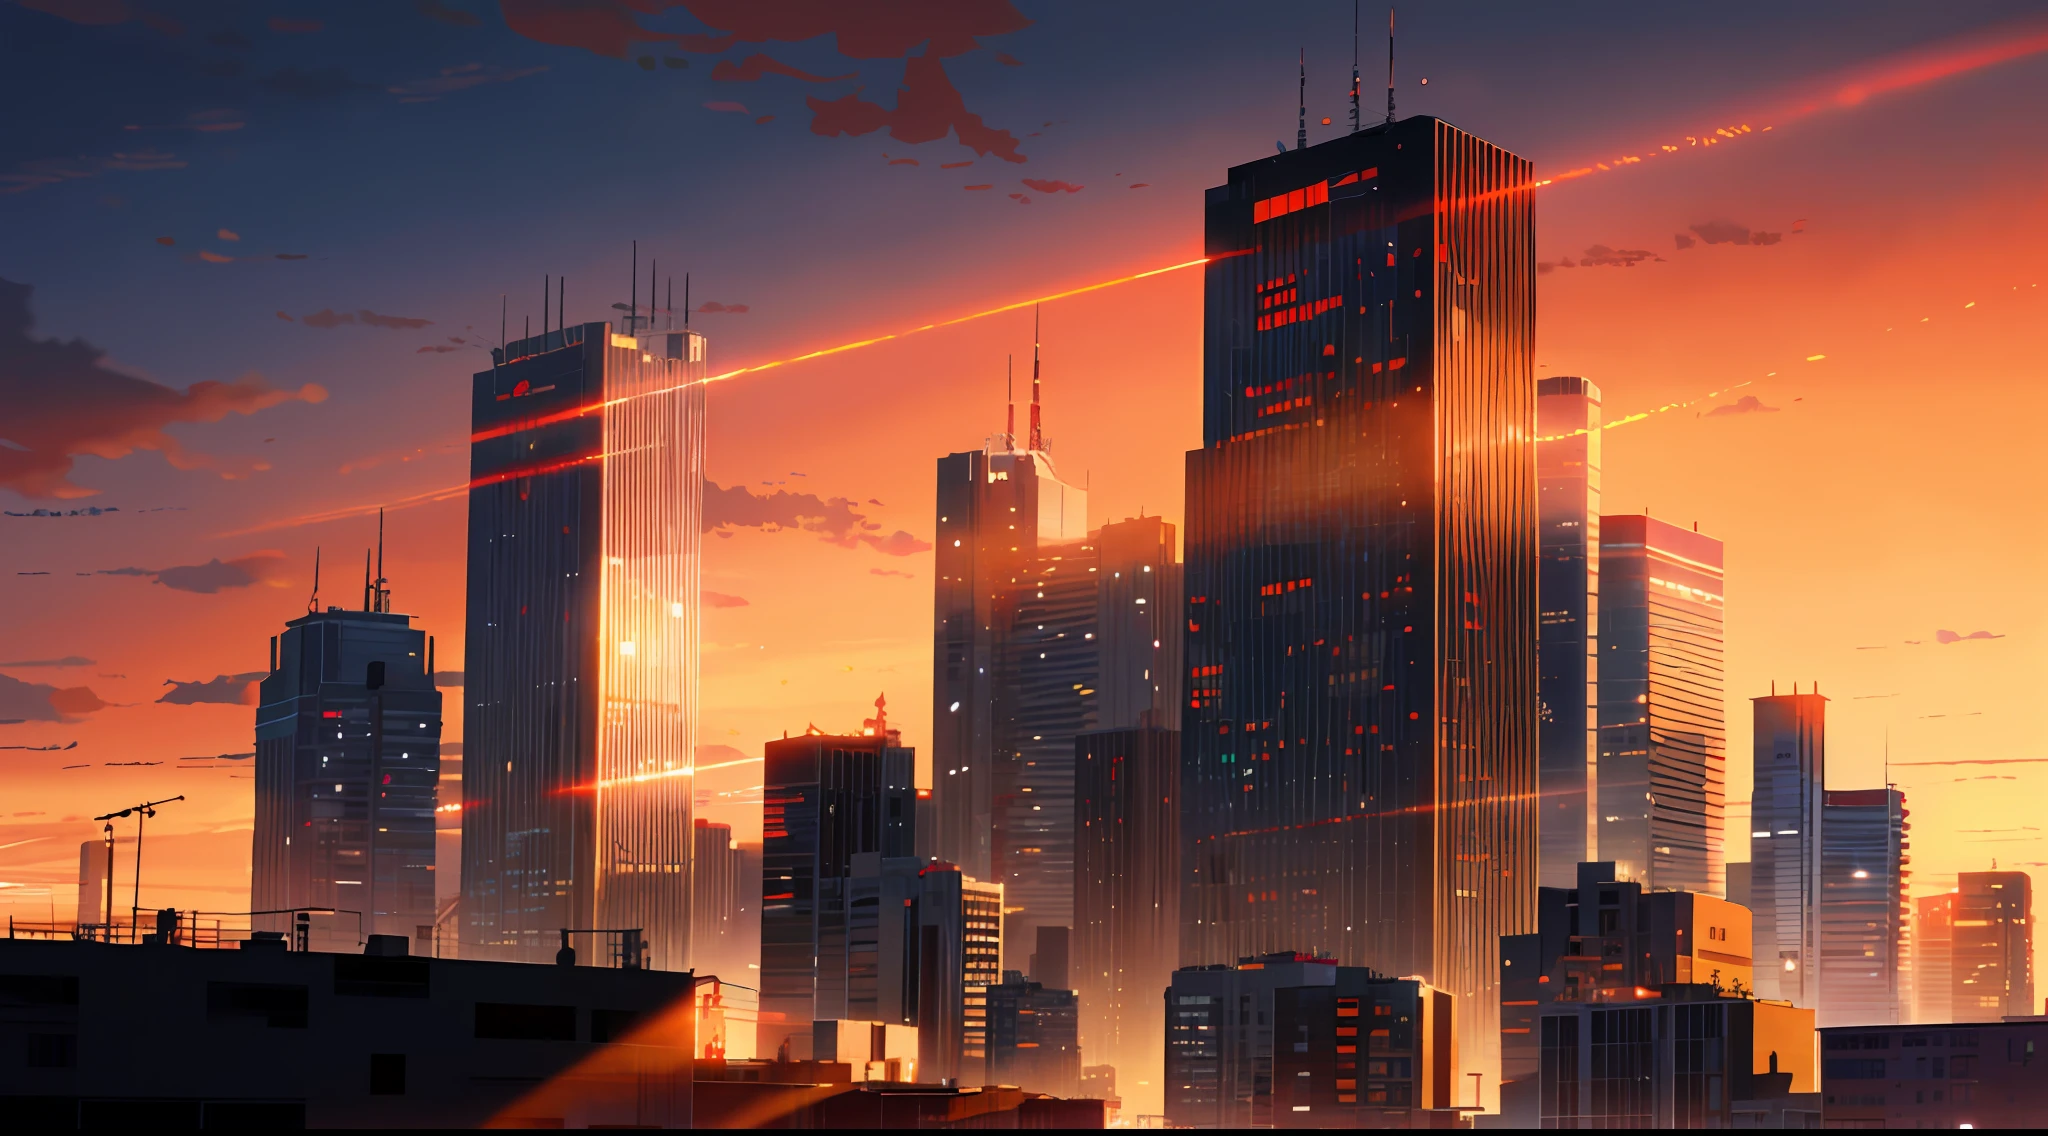 (Obra de arte: 1.2, mais alta qualidade), (iluminação) 3, ilustrações detalhadas em estilo anime, edifícios urbanos tingidos pelo sol poente olhando de baixo, edifícios na sombra e parecendo escuros e nebulosos. A tela inteira fica vermelha brilhante, makoto shinkai, estilo anime, e o céu também está tingido de vermelho brilhante.